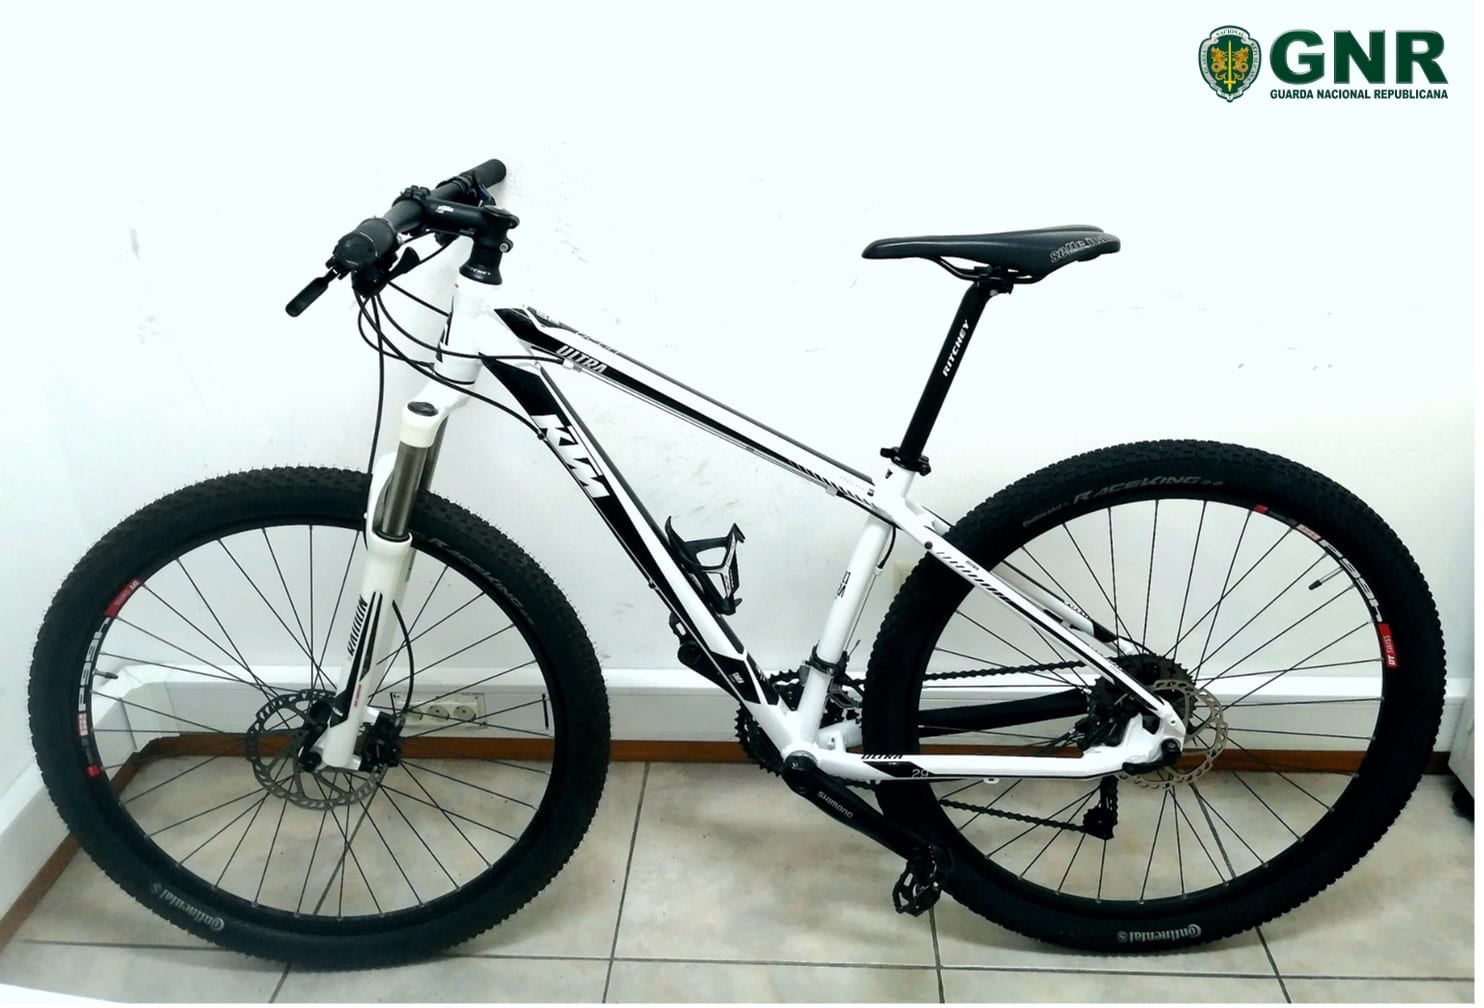 Recuperação de bicicleta furtada em Famalicão